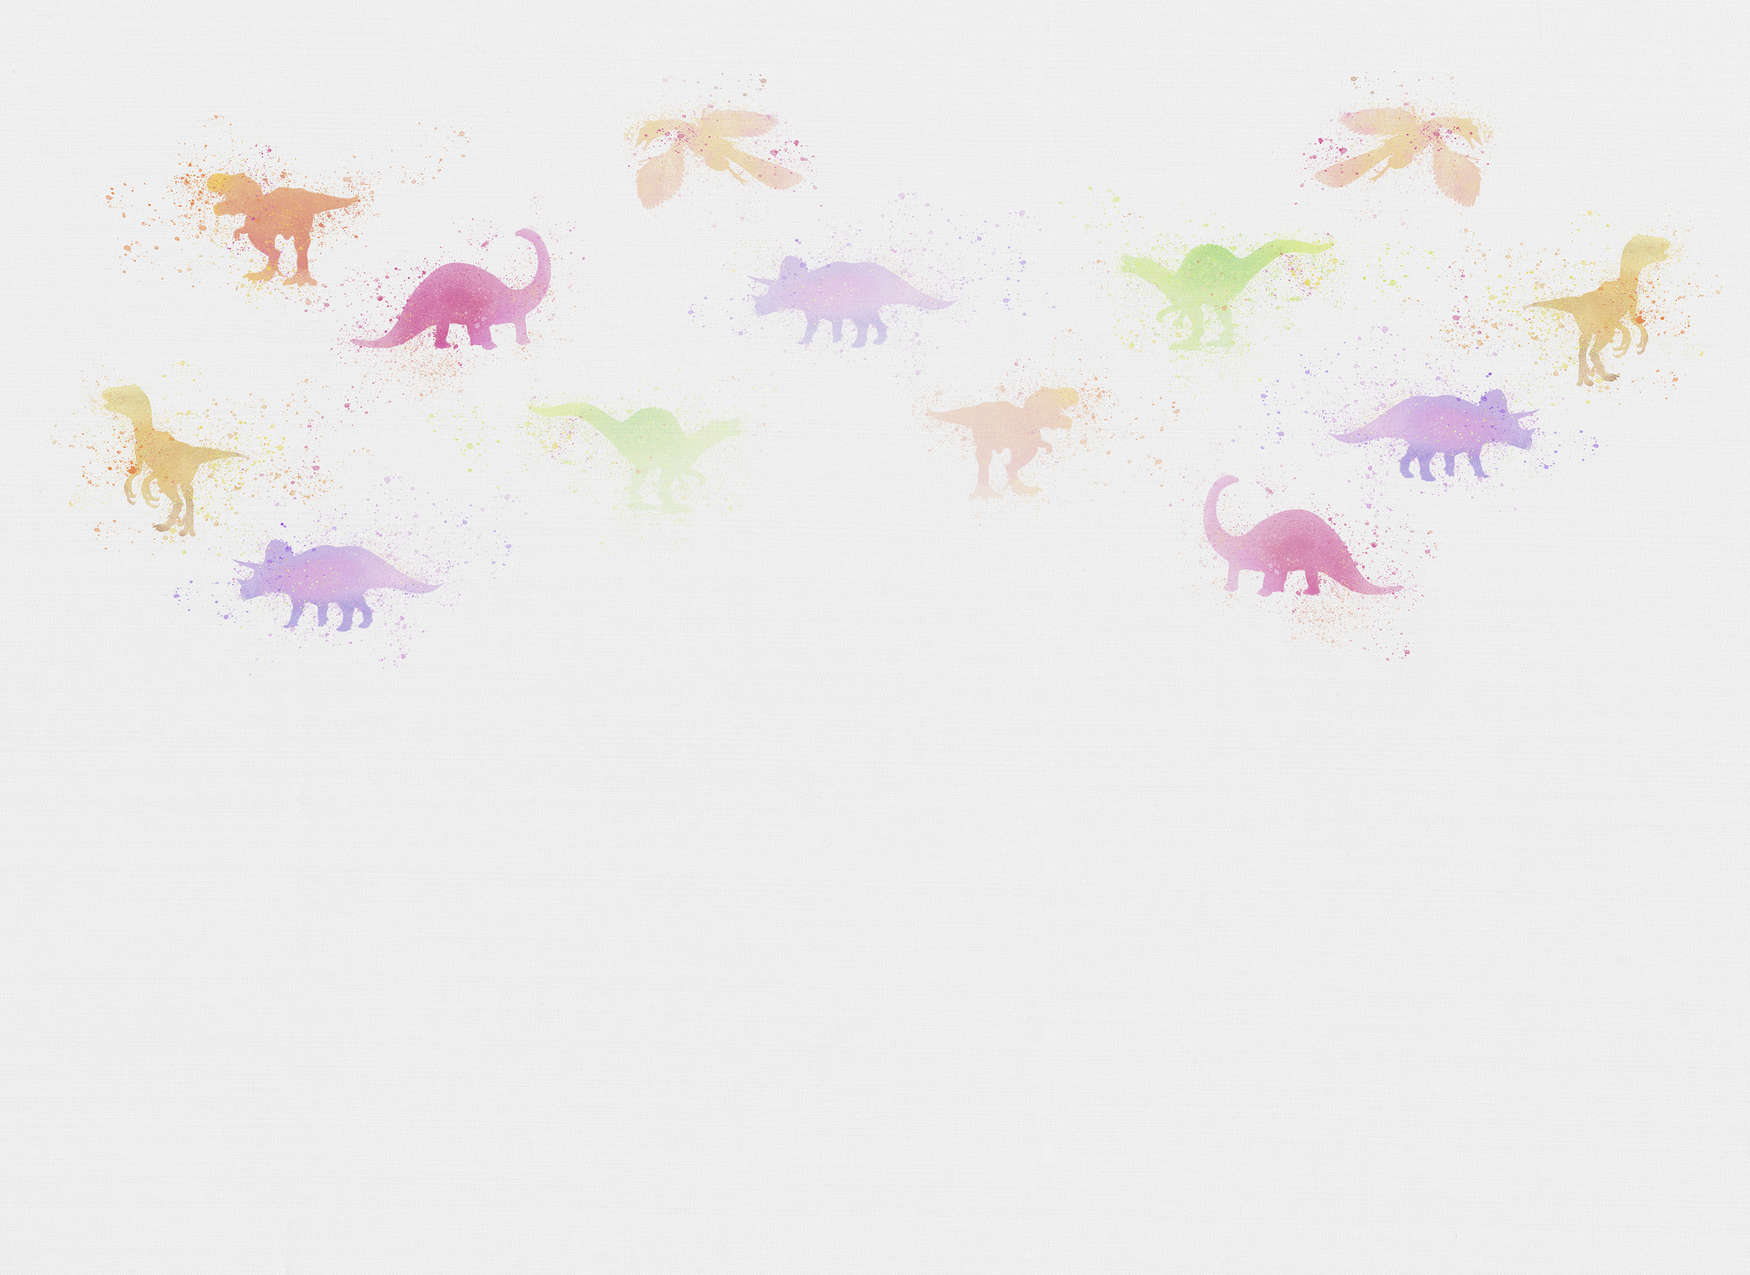             Carta da parati per la camera dei bambini con piccoli dinosauri - Colorata, bianca
        